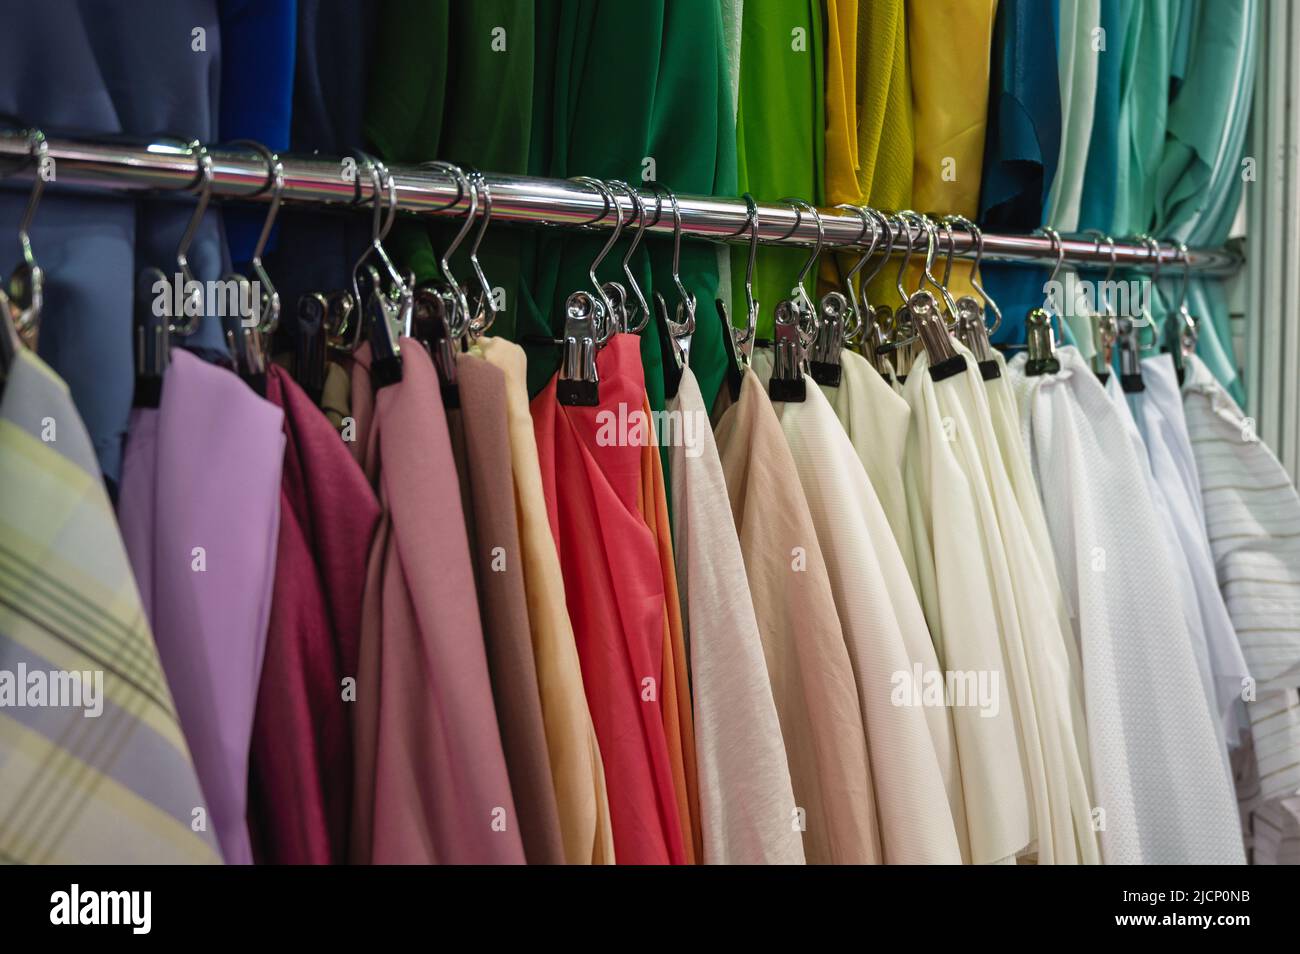 Muestras de telas de colores brillantes cuelgan en la barra metálica del estante Foto de stock